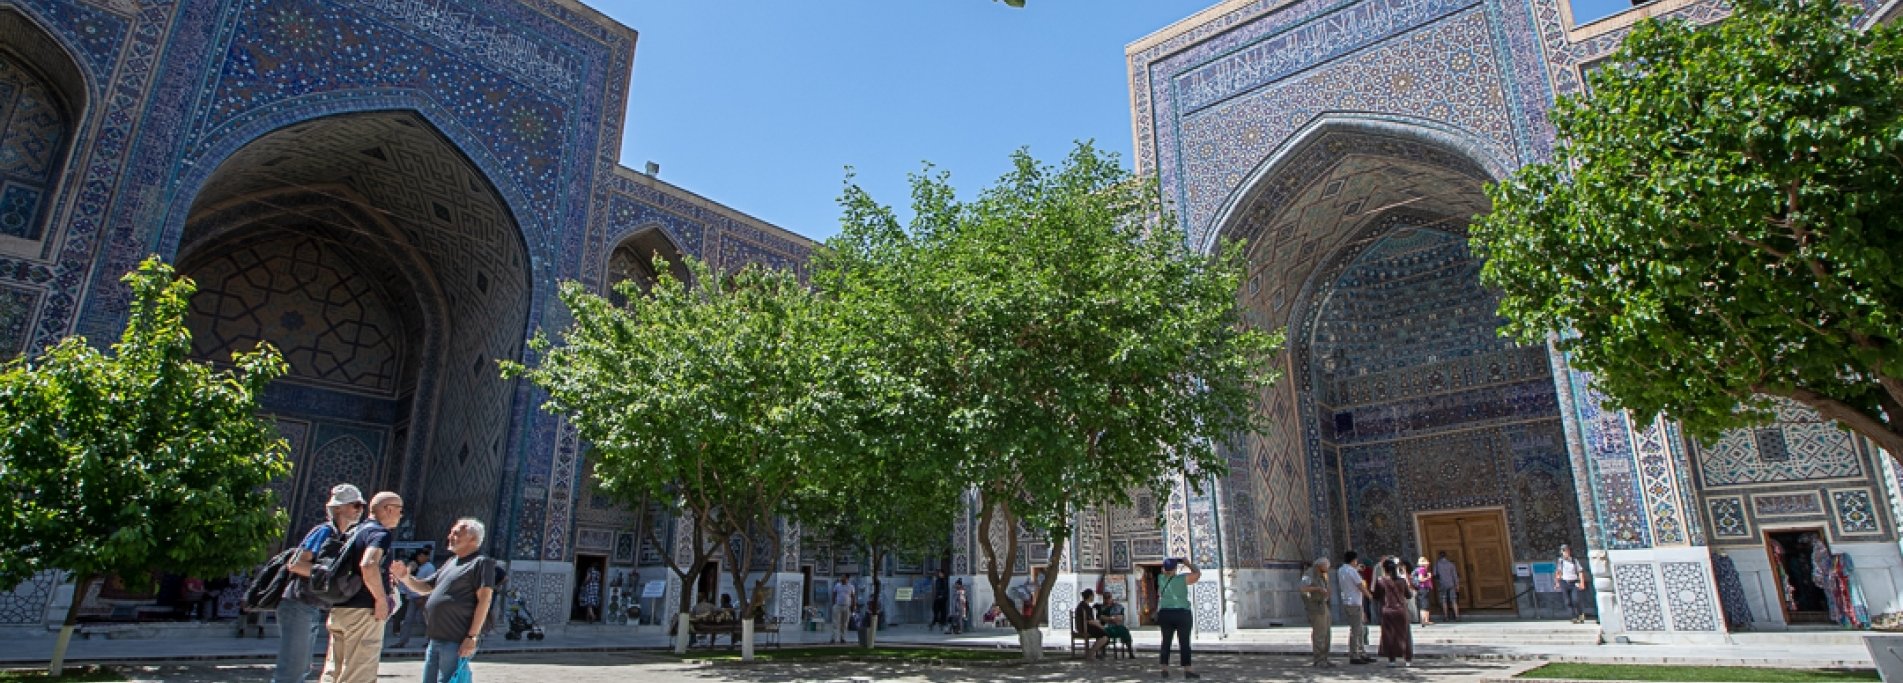 Неделя в великолепном Узбекистане - Погружение в средневековый Узбекистан